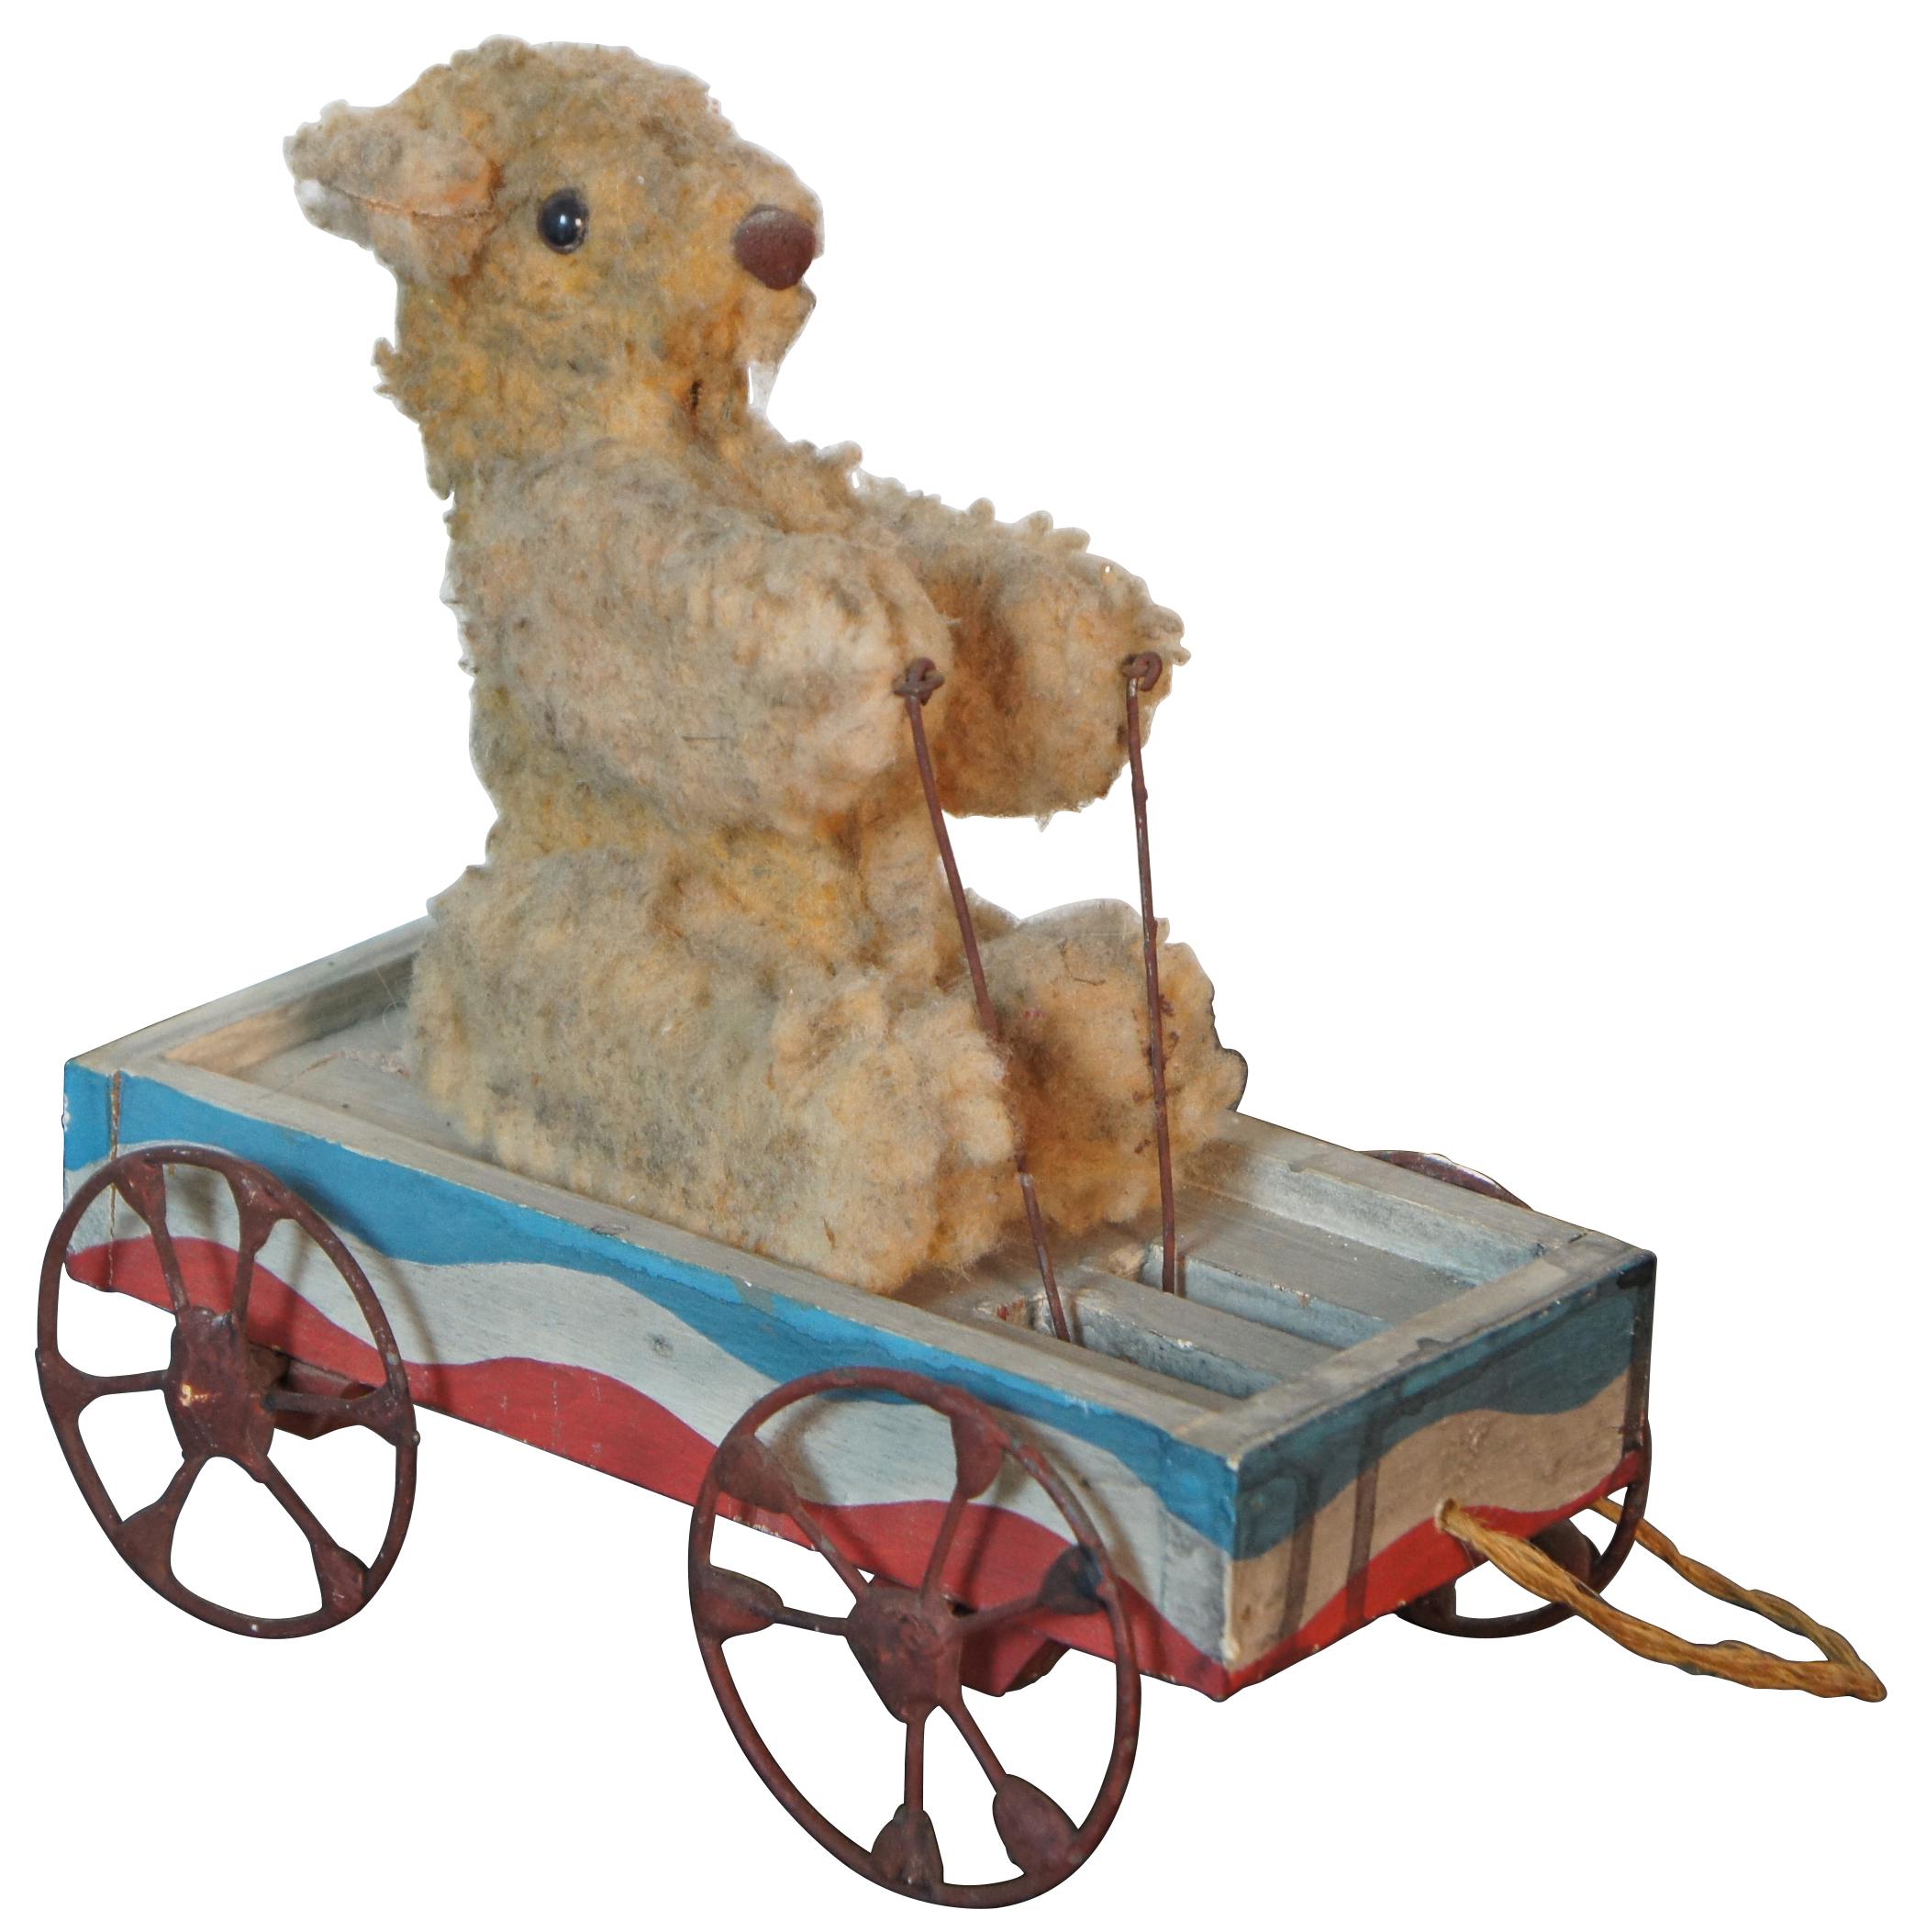 Jouet à tirer antique à plateforme roulante articulée représentant un ours en peluche assis dans un wagon rouge blanc et bleu dont les bras montent et descendent au fur et à mesure qu'il roule.
 